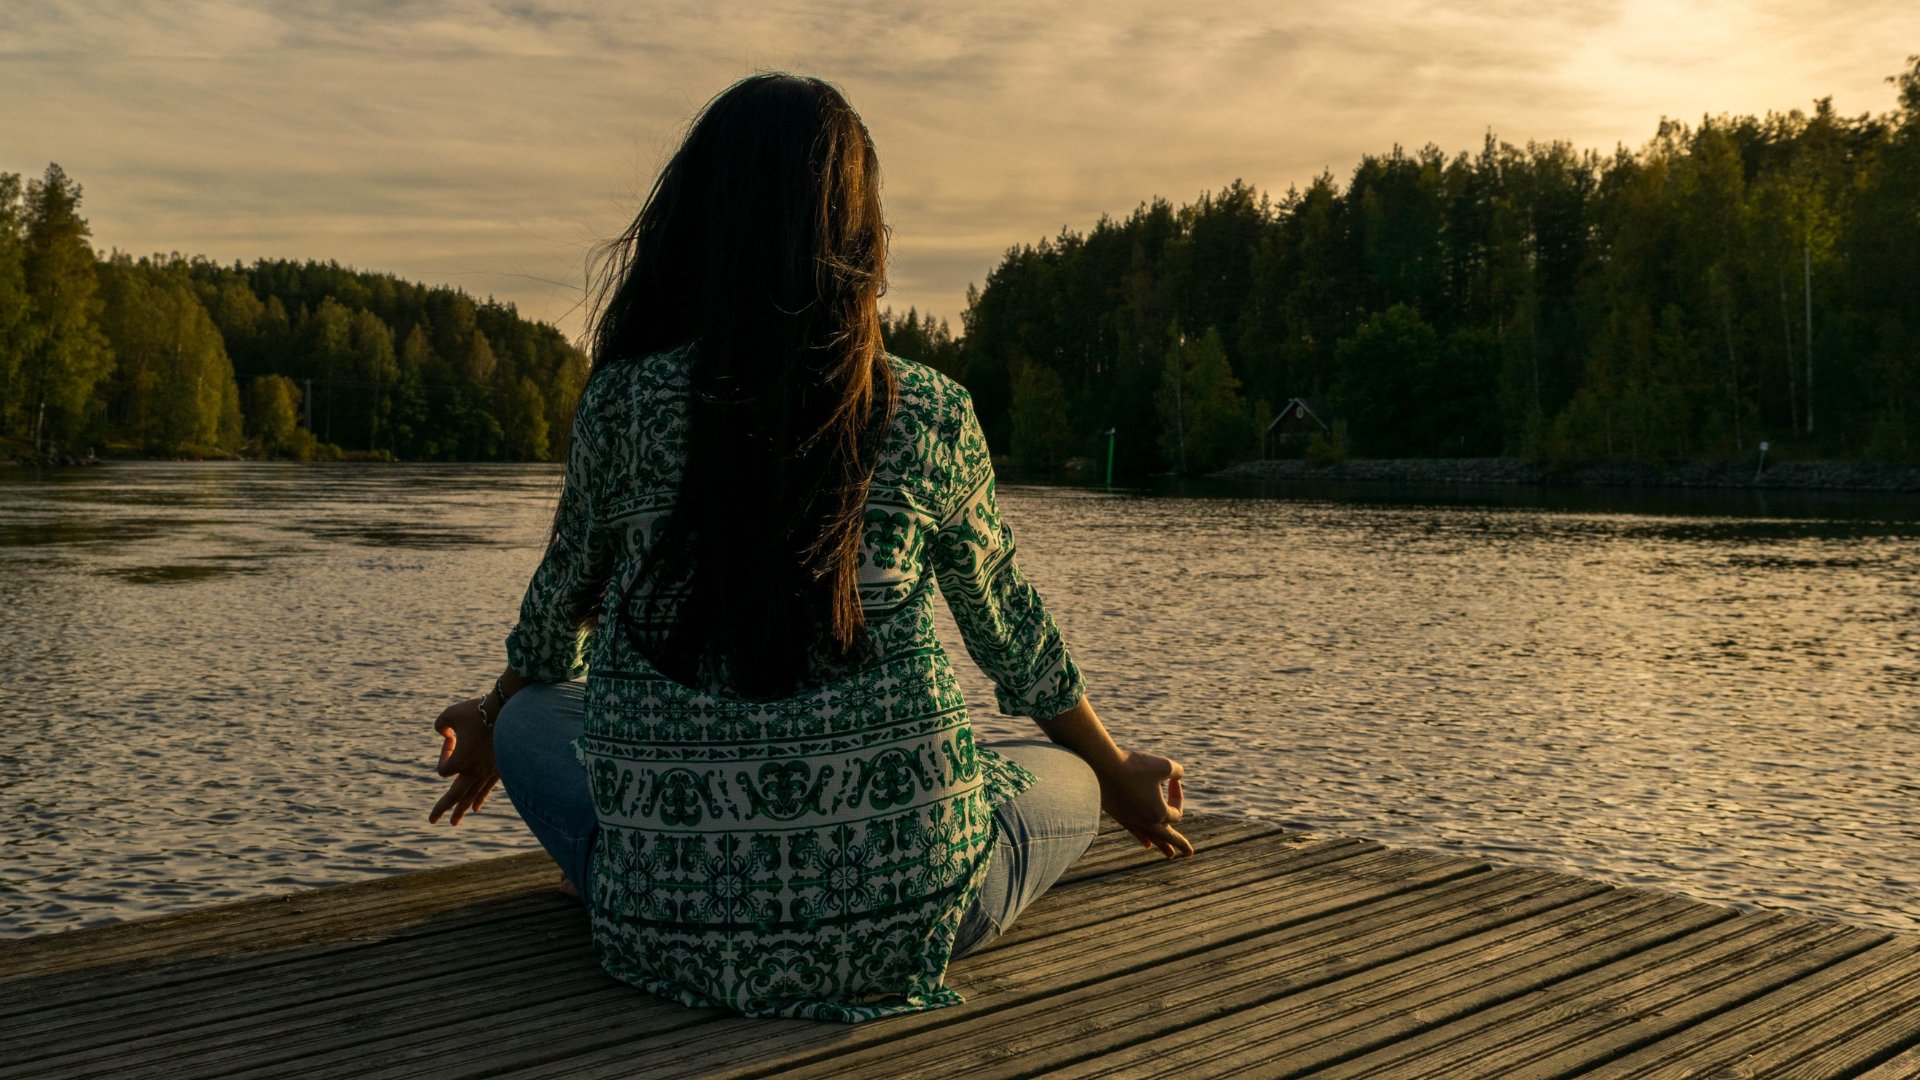 Uma mulher de costas meditando em meio à natureza. Em frente, um rio e árvores.